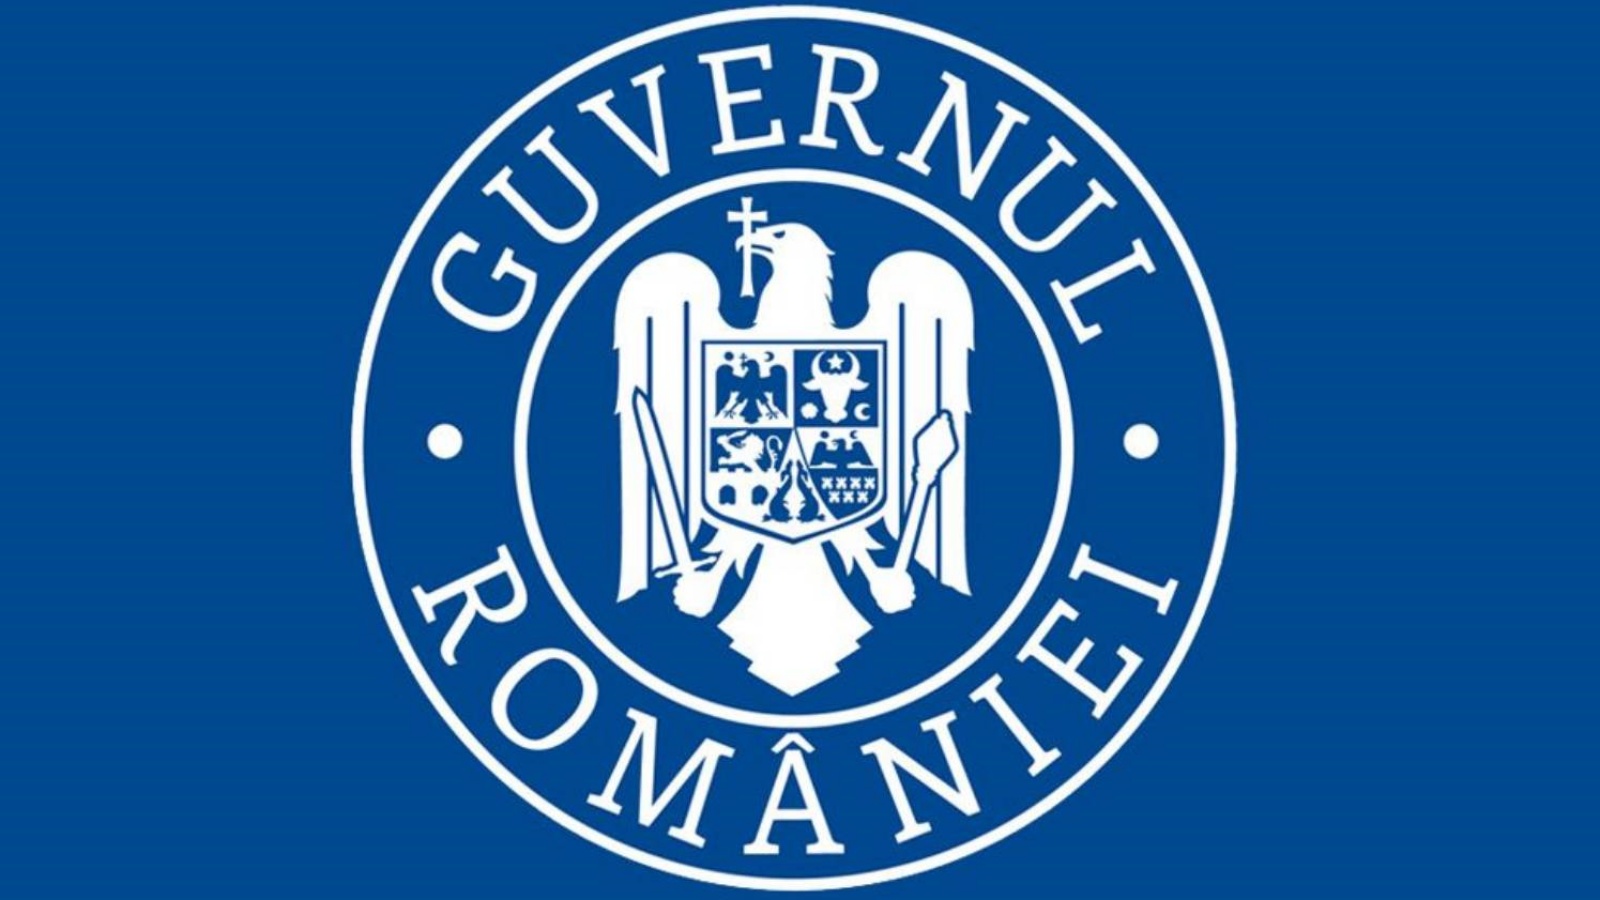 Das digitale Einreiseformular für Rumänien wurde von der Regierung offiziell angekündigt